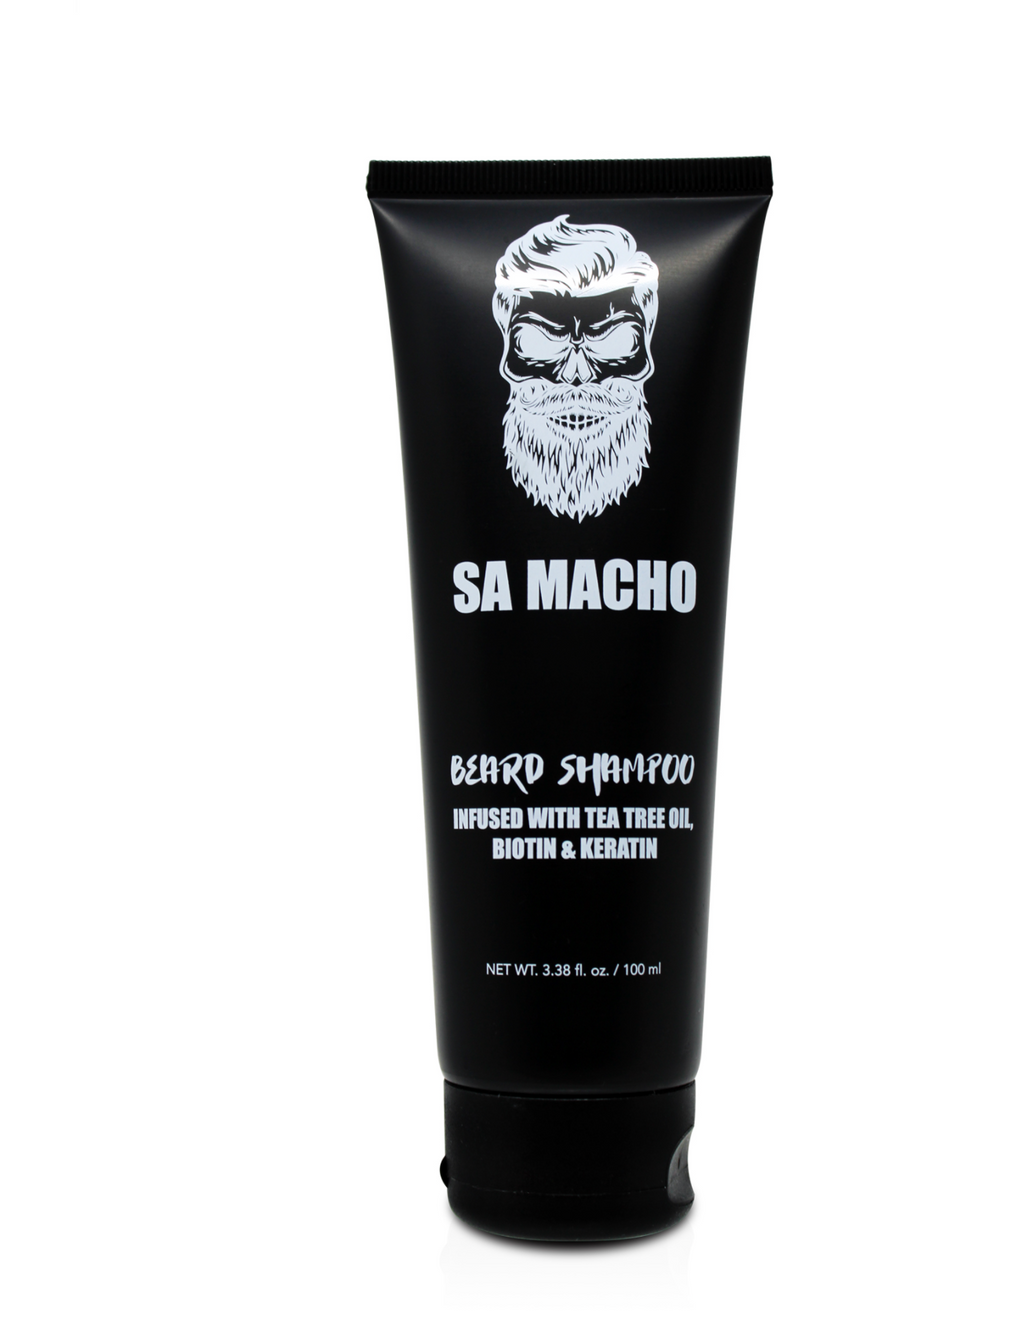 SA Macho shampoo